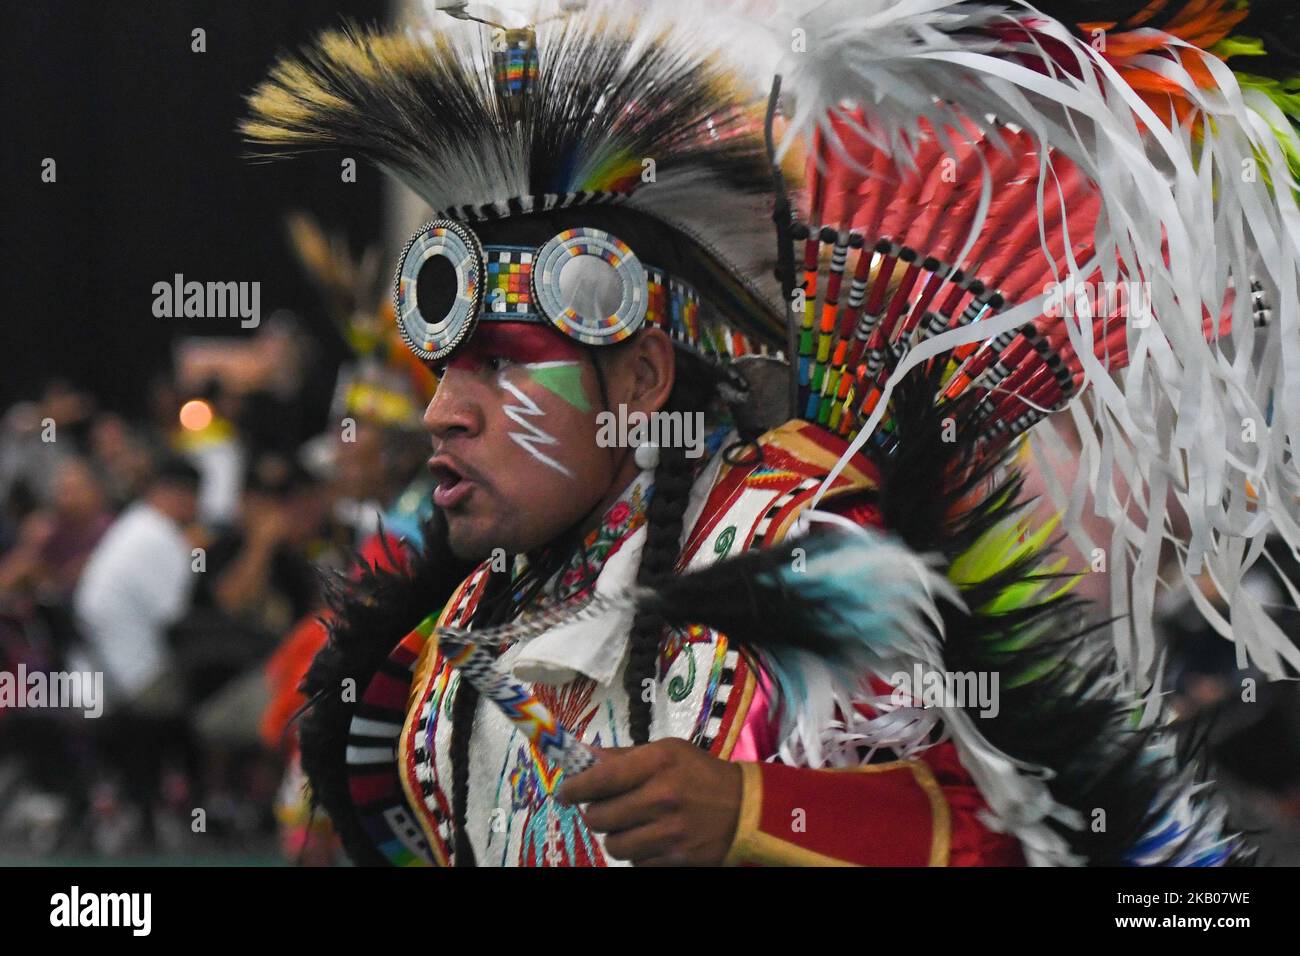 Mitglied der First Nations am zweiten Tag des jährlichen traditionellen Pow Wow-Wettbewerbs 3. beim K-Days Festival in Edmonton. Über 700 First Nations-Tänzer aus Dutzenden verschiedener Stämme werden an drei Tagen in dieser Woche an den K-Days in Edmonton zu sehen sein. Am Mittwoch, den 25. Juli 2018, Alberta, Kanada. (Foto von Artur Widak/NurPhoto) Stockfoto